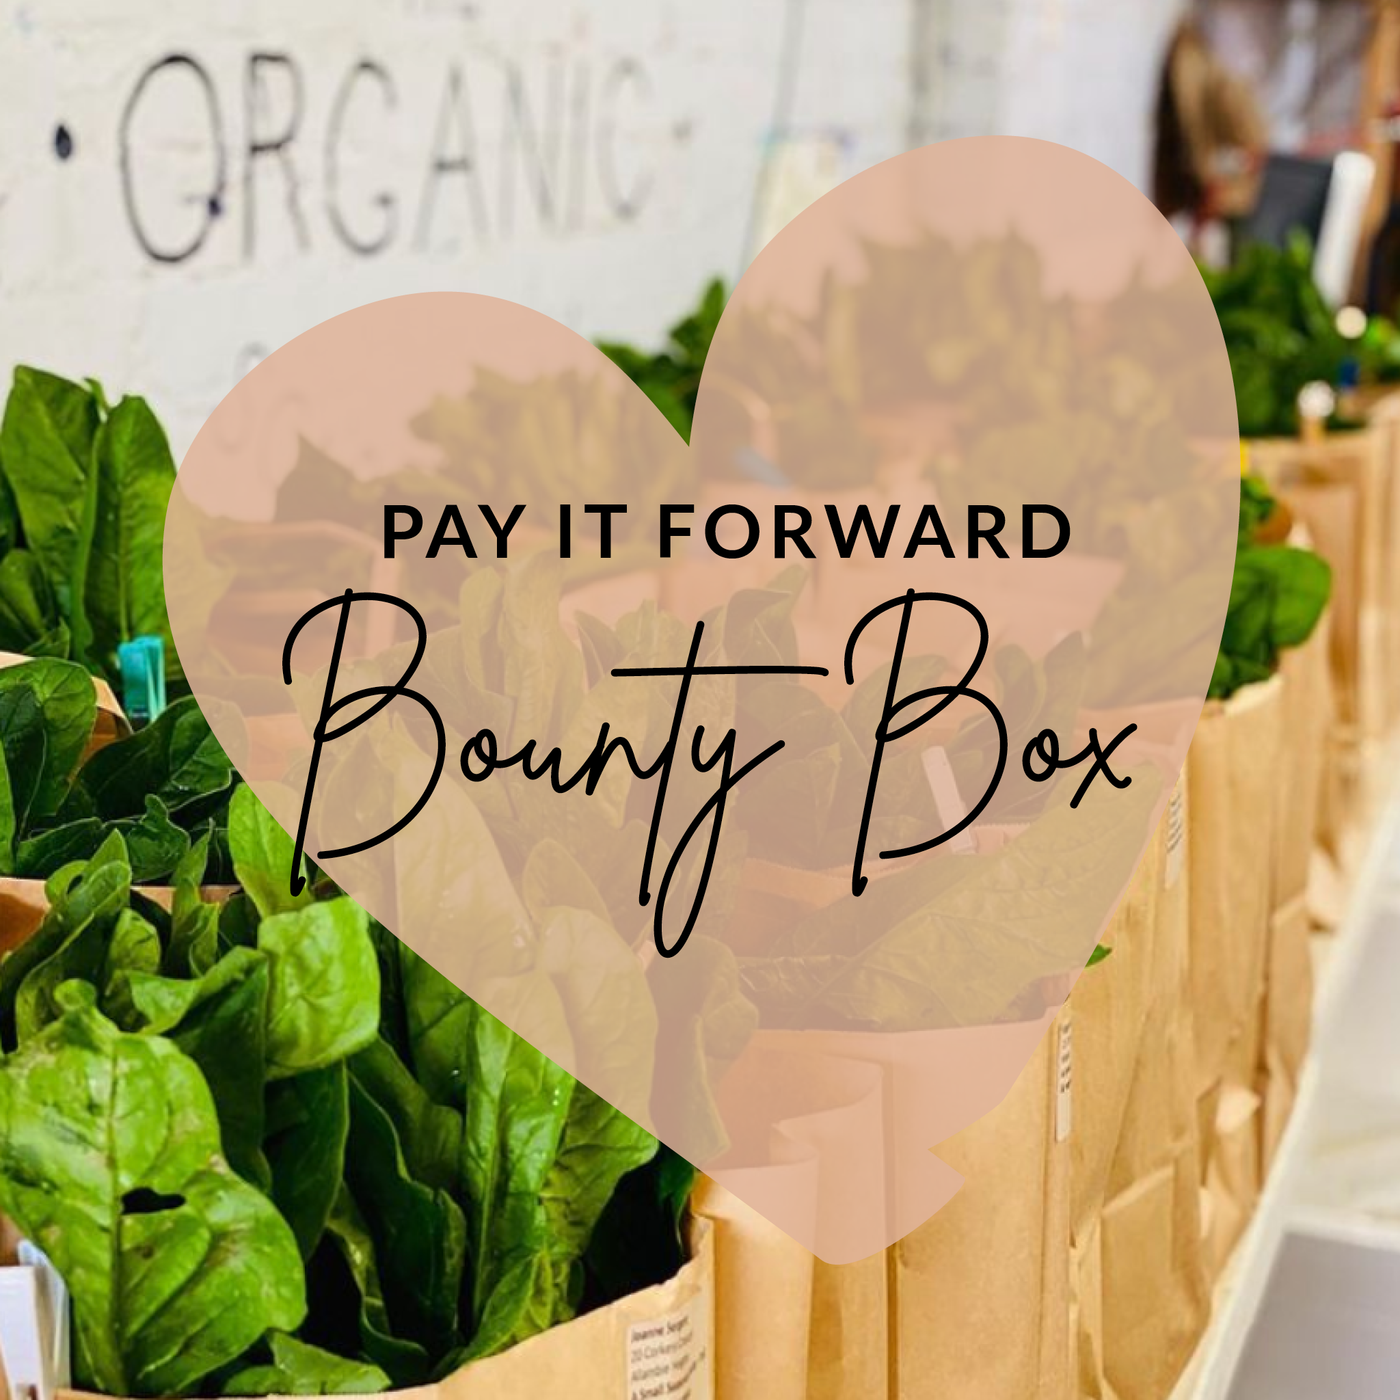 'Pay it Forward' Produce & Staples Donation Bounty Box